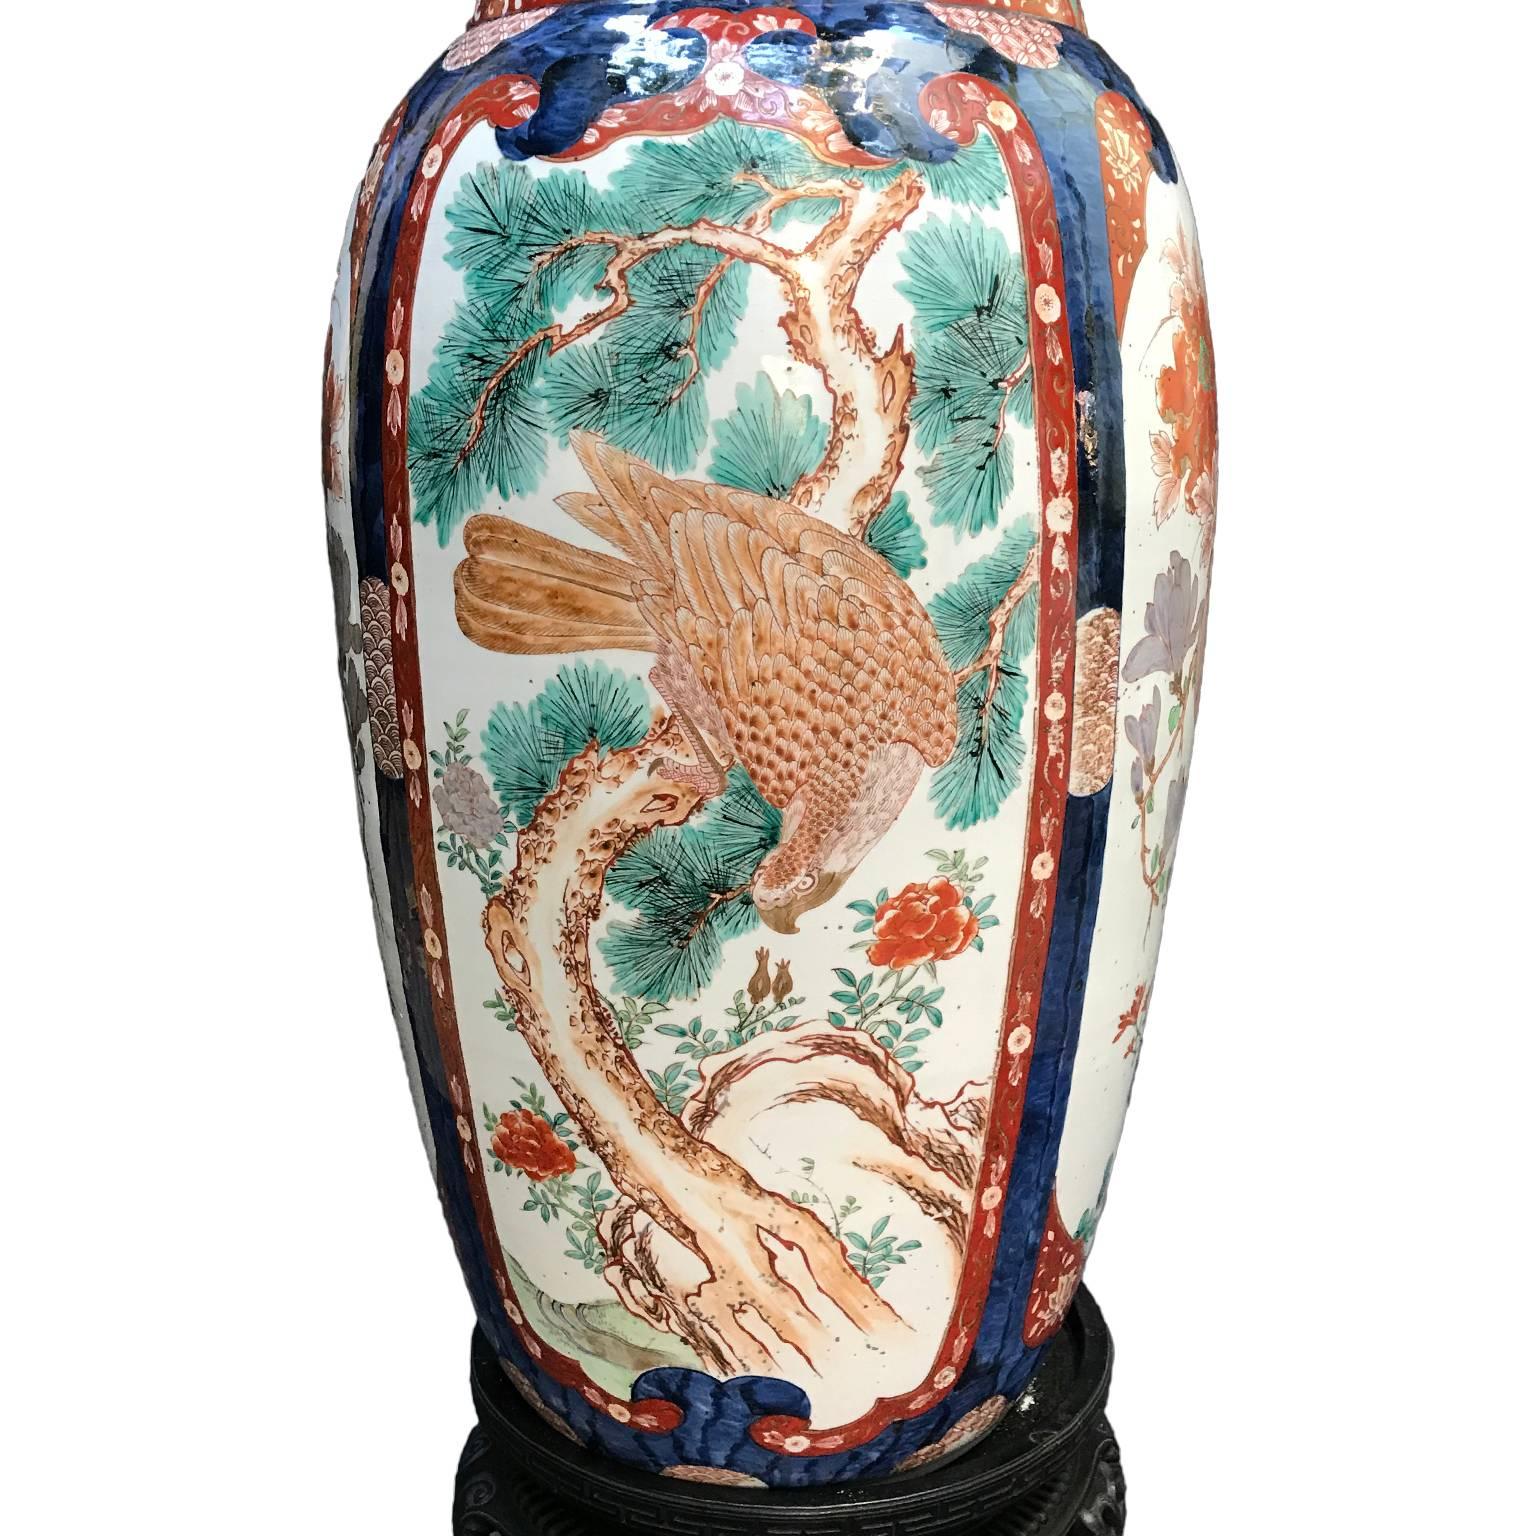 Pair of Large Imari Vases 19th Century Japanese Blue Red White Porcelain Vases 7